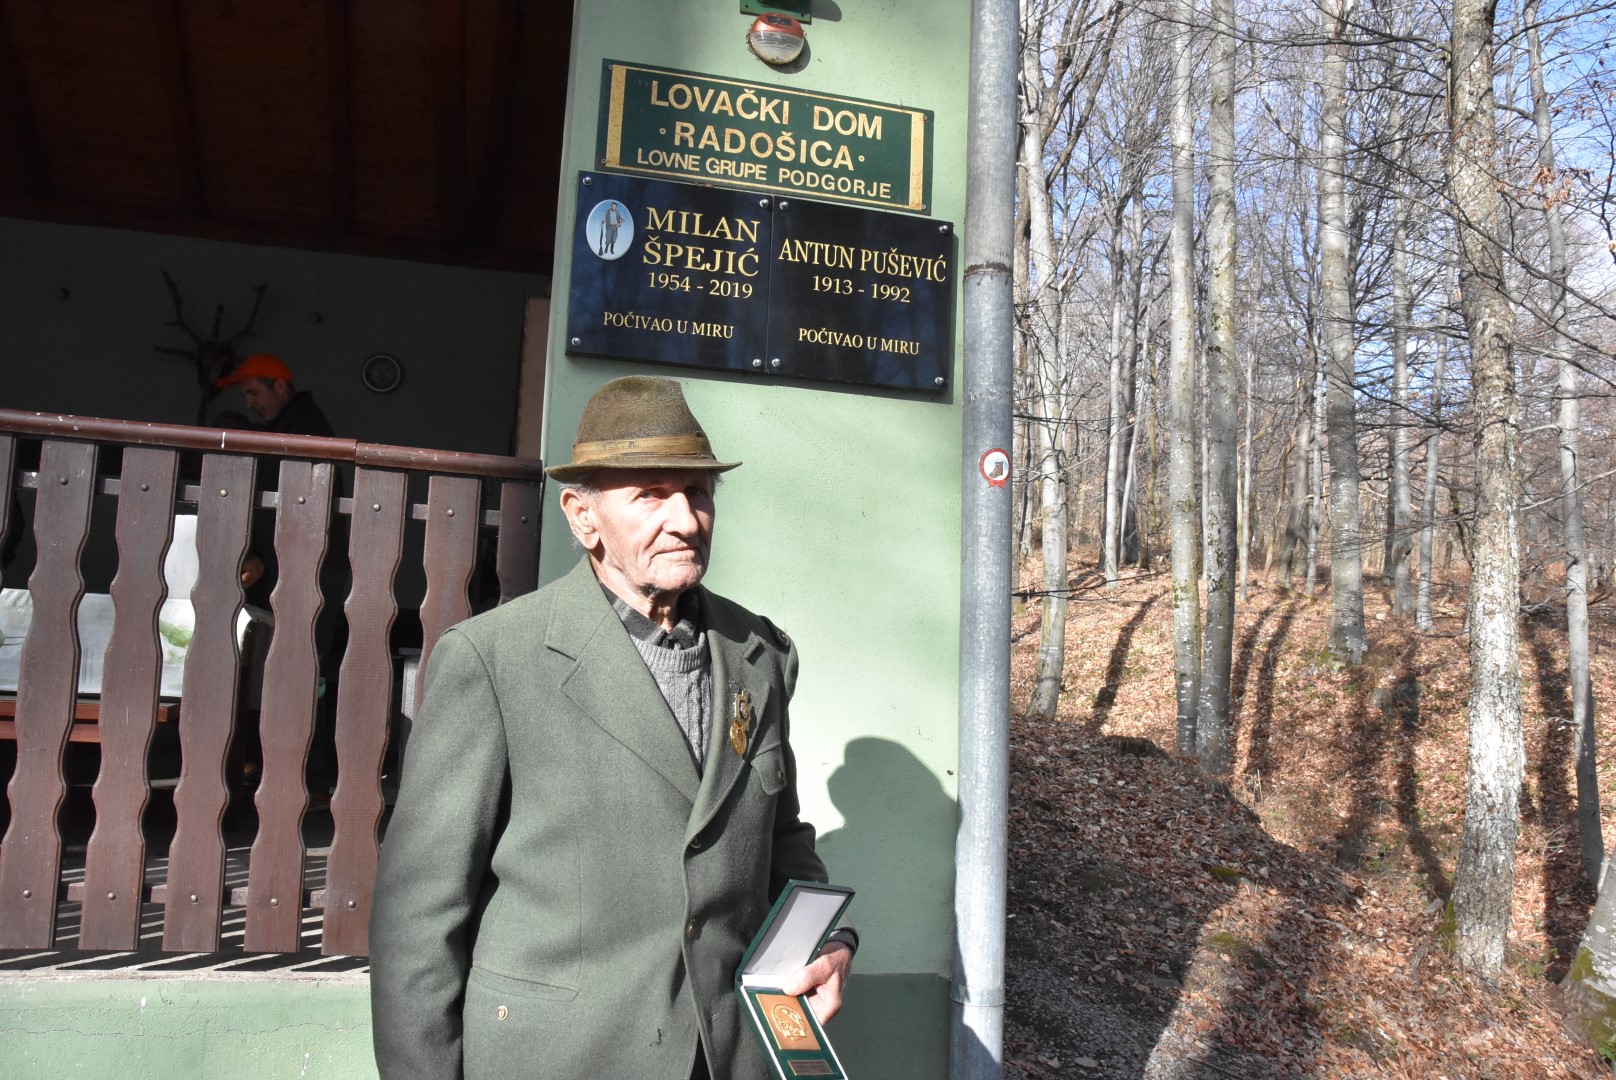 Požega.eu | Uz lovstvo Andrija Lukačević je davao Podgorju, a prije 70 godina osnovao je vatrogasno društvo!